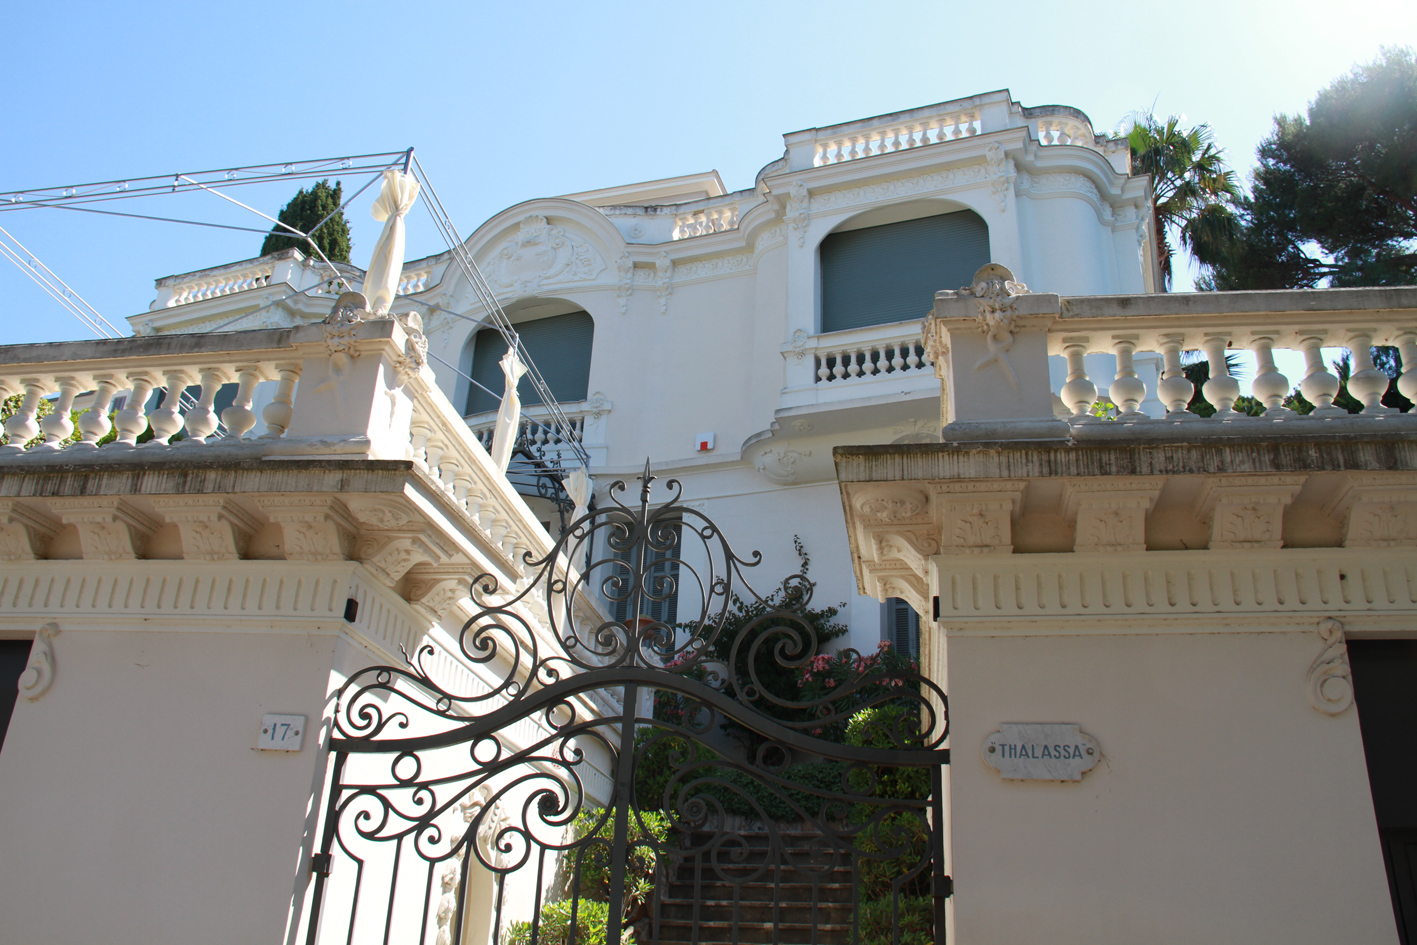 maison de villégiature (villa balnéaire) dite Villa Thalassa.